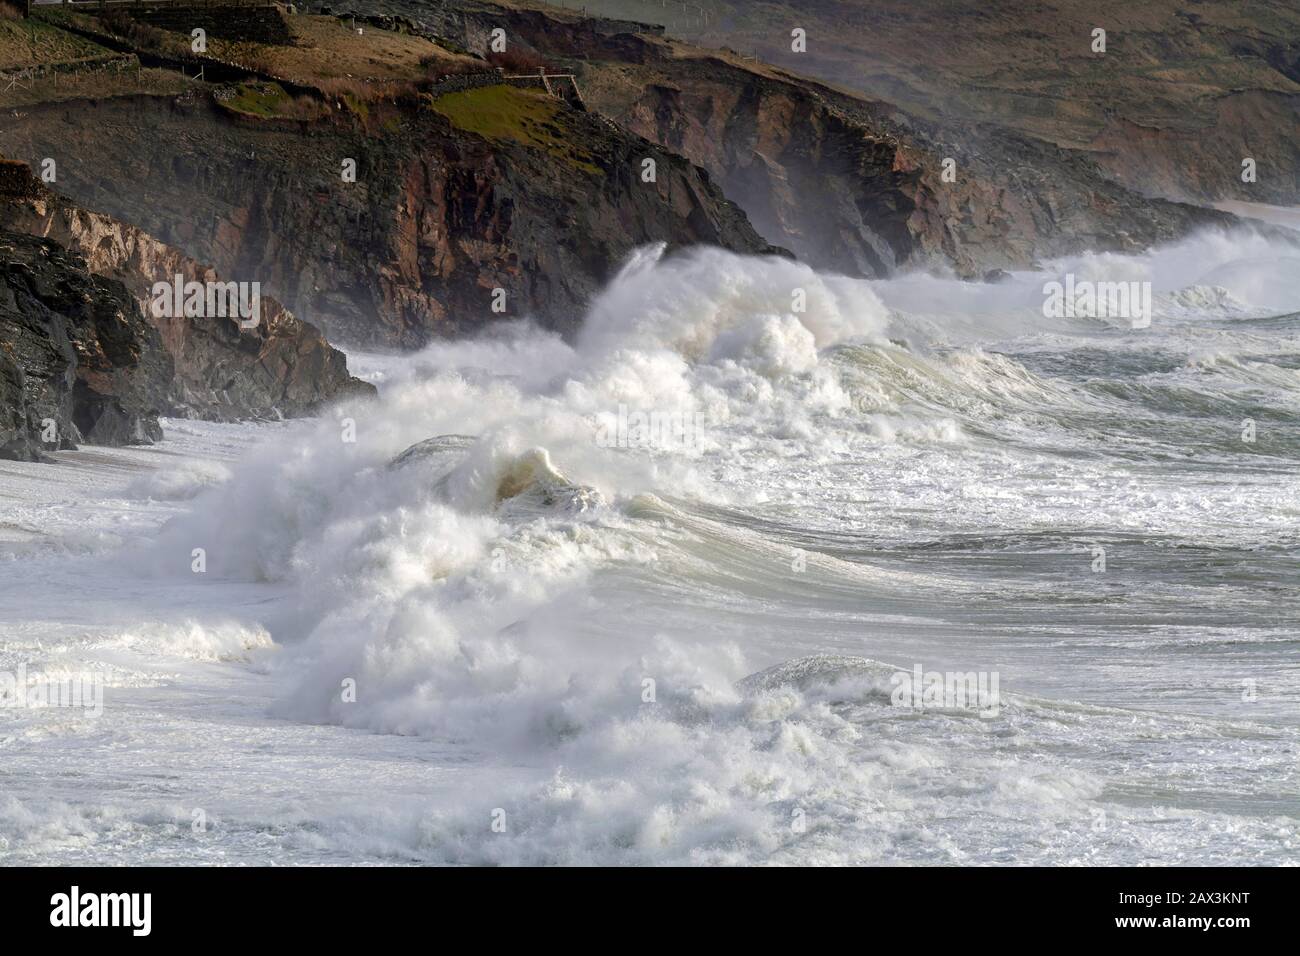 Porthleven, Cornwall, Großbritannien. Februar 2020. Sturm Ciara immer noch die kornische Küste bei Porthleven durchstoßen. Bob Sharples/Alamy Live News Stockfoto